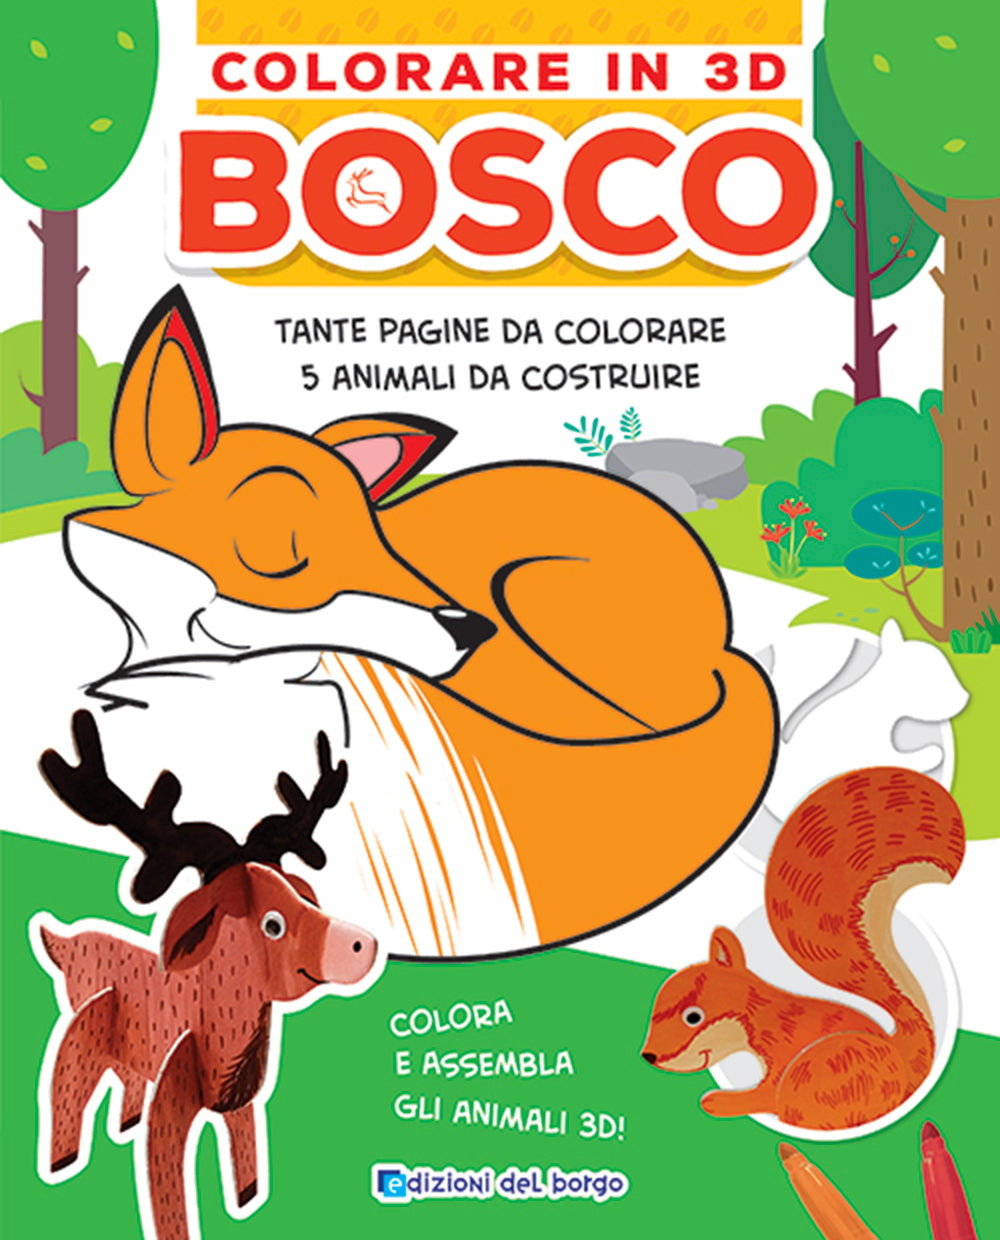 Colorare in 3D Bosco::Tante pagine da colorare - 5 soggetti da costruire